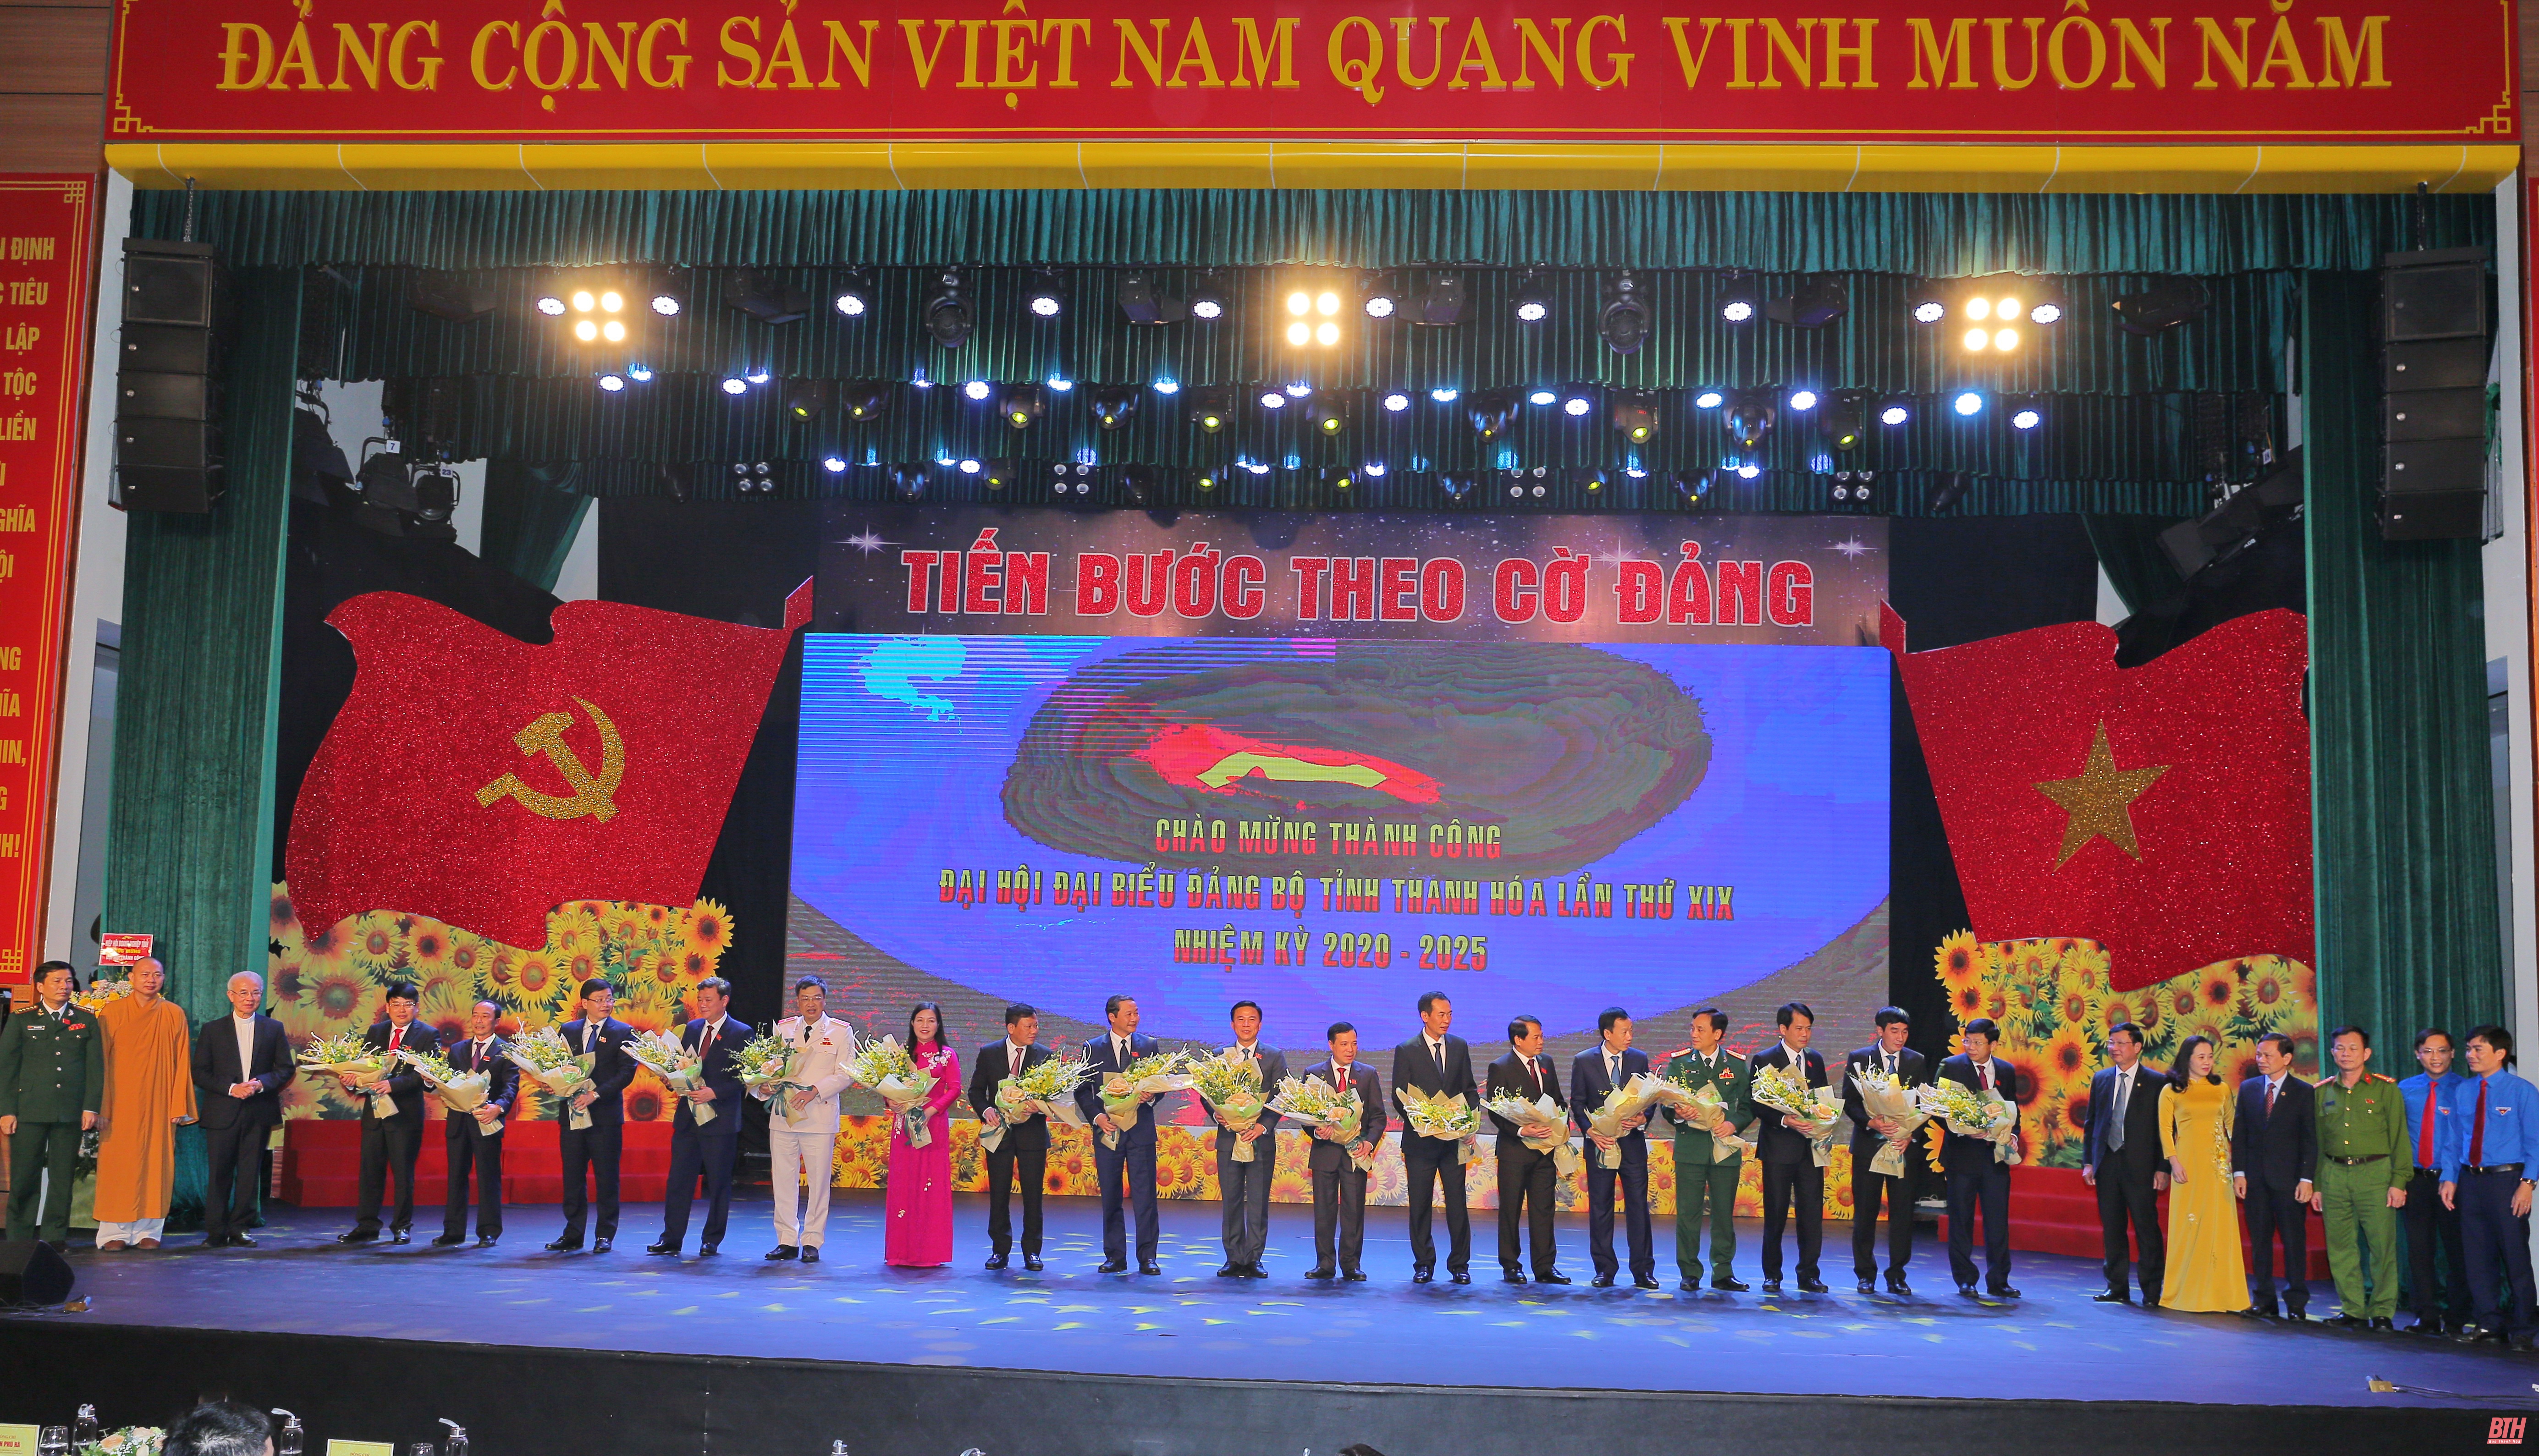 Chào mừng thành công Đại hội đại biểu Đảng bộ tỉnh Thanh Hóa lần thứ XIX